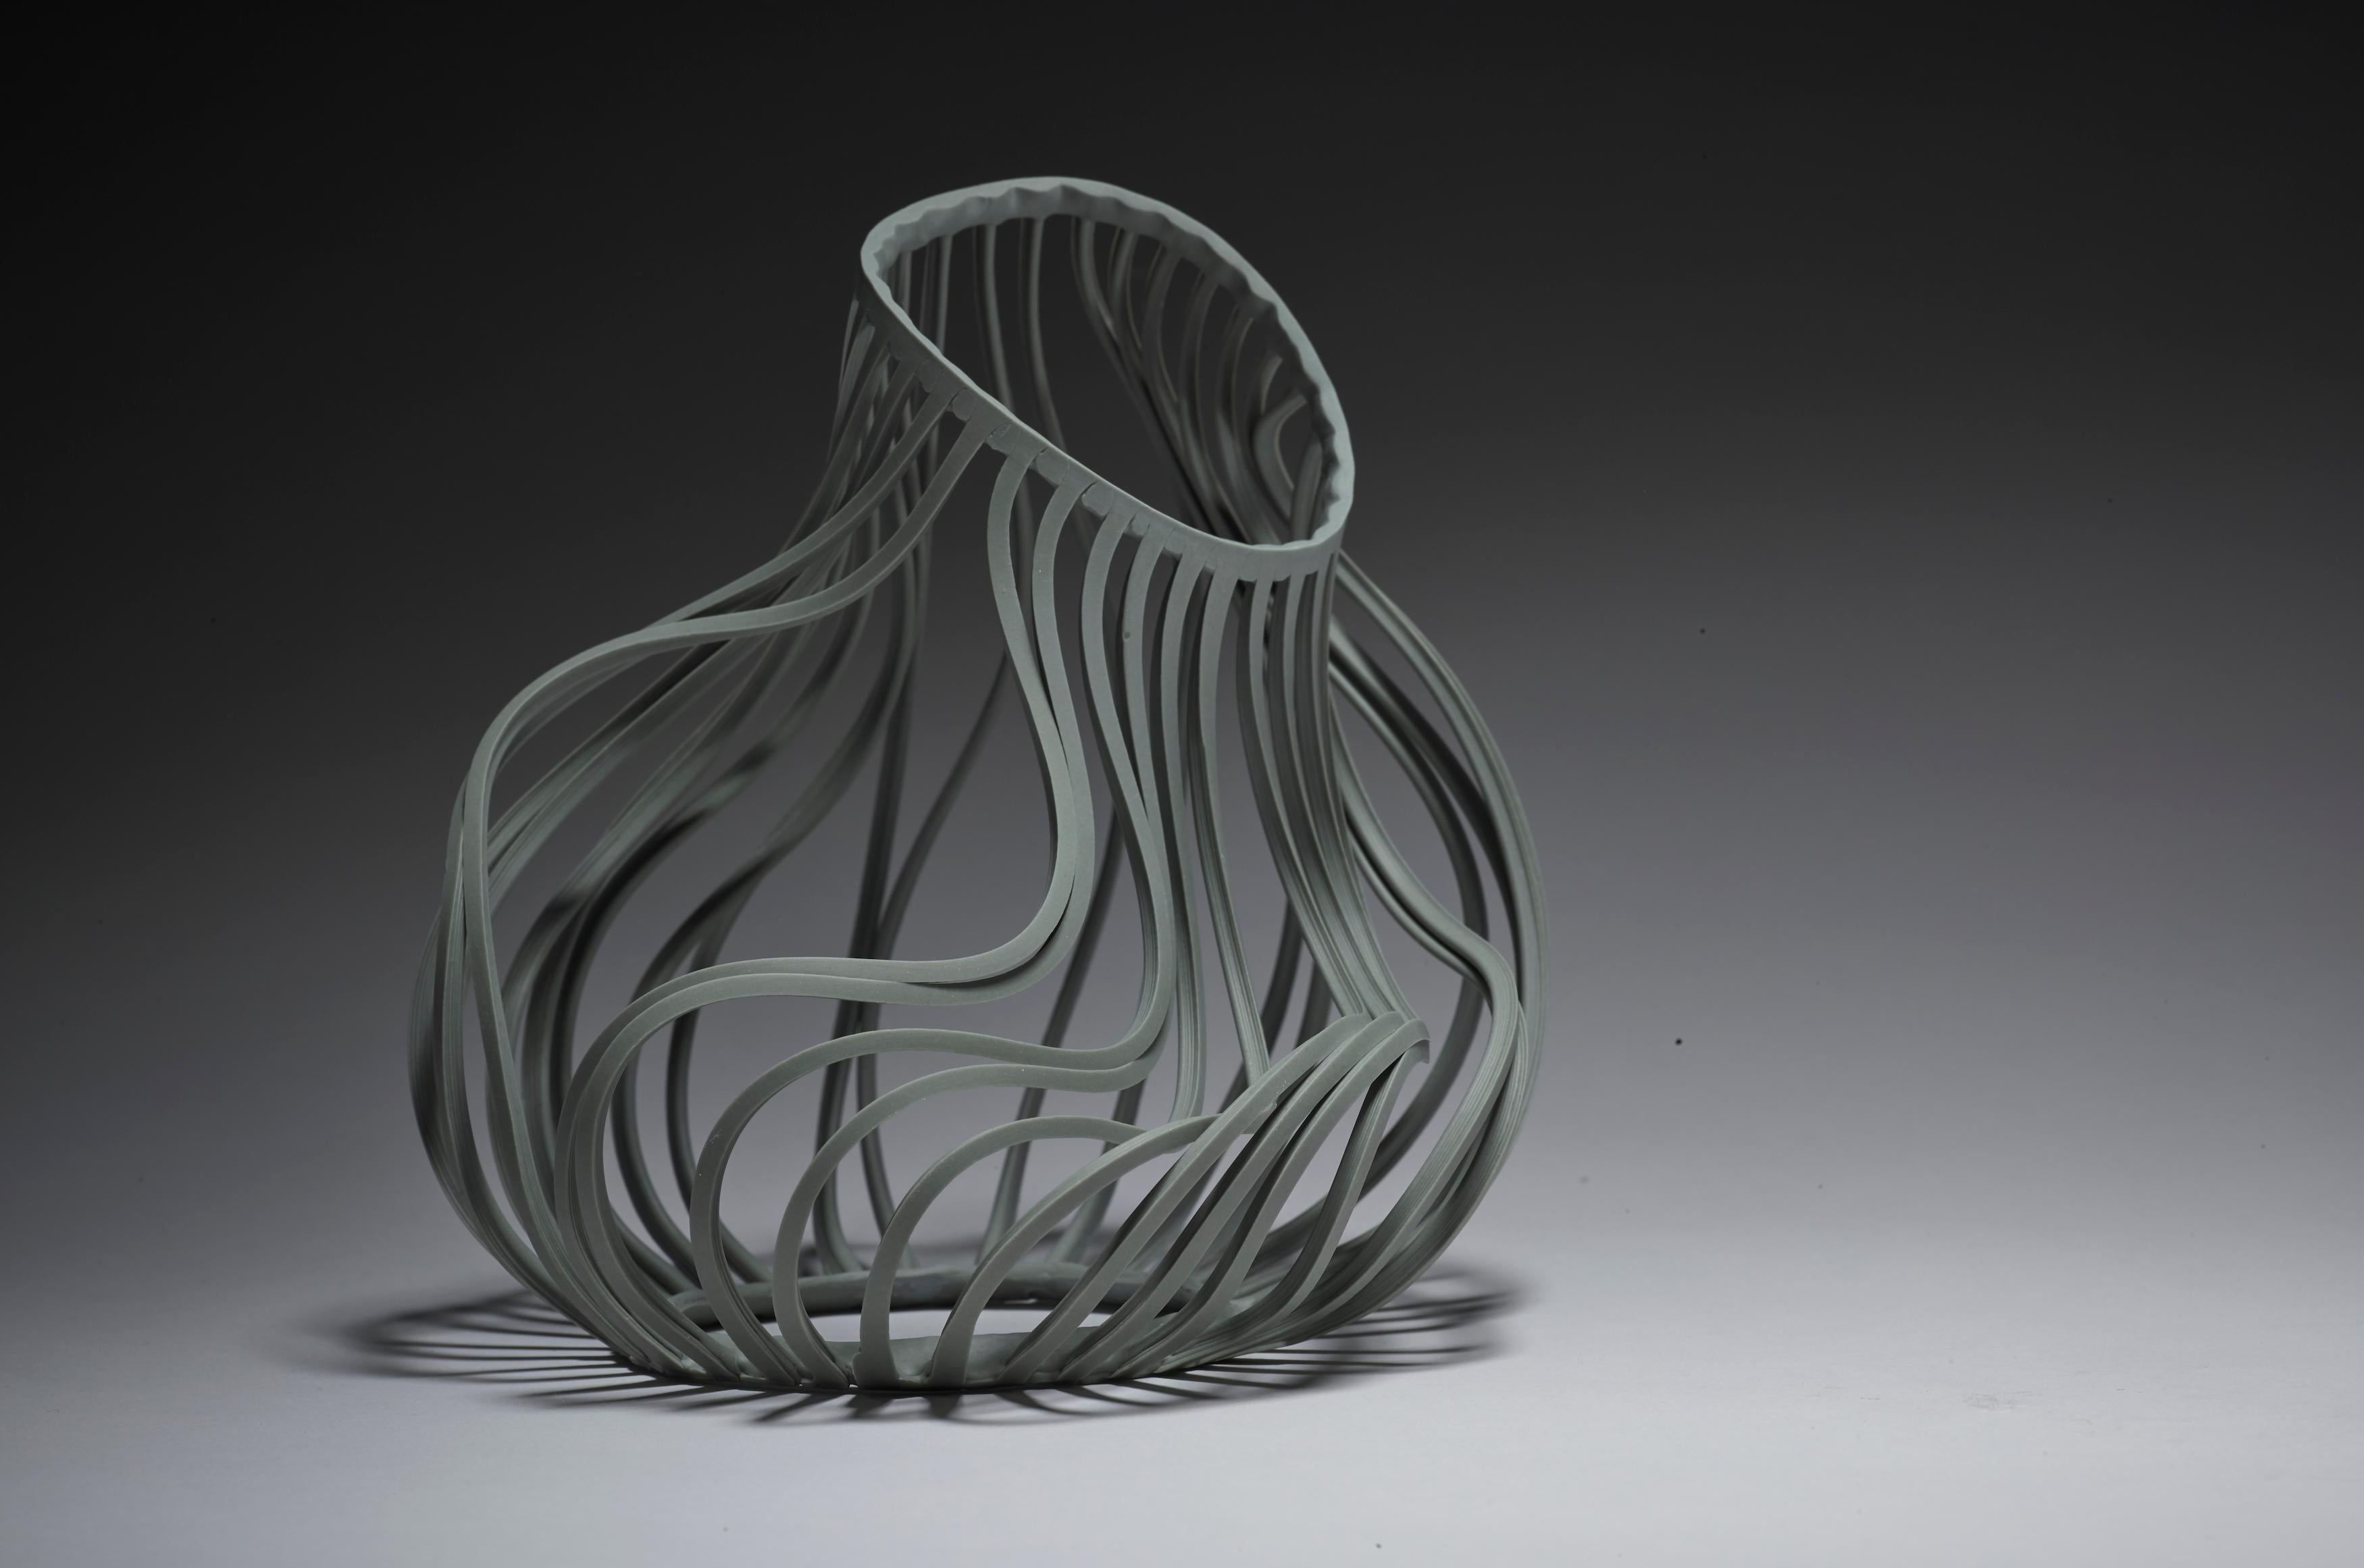 Bio: 
Die Keramikerin Lauren Nauman schloss ihr Studium am Royal College of Art mit einem Master in Keramik und Glas ab. Die traditionelle Technik des Schlickergusses steht im Mittelpunkt ihrer Arbeit, und der Prozess der Formherstellung und des